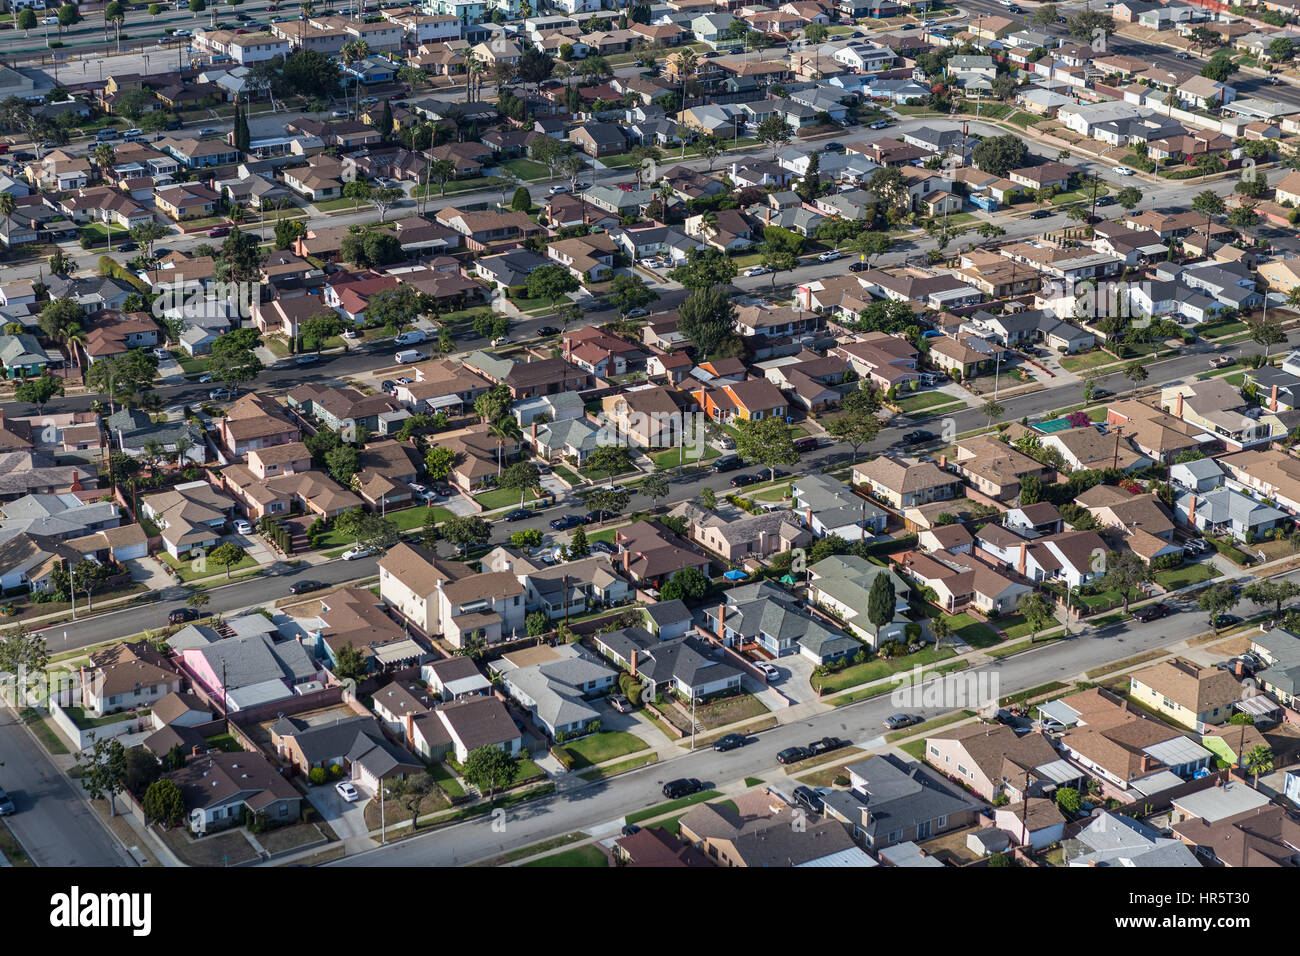 Los Angeles, California, Stati Uniti d'America - 6 Agosto 2016: Pomeriggio Vista aerea del vecchio centro della classe strade residenziali nella Contea di Los Angeles. Foto Stock